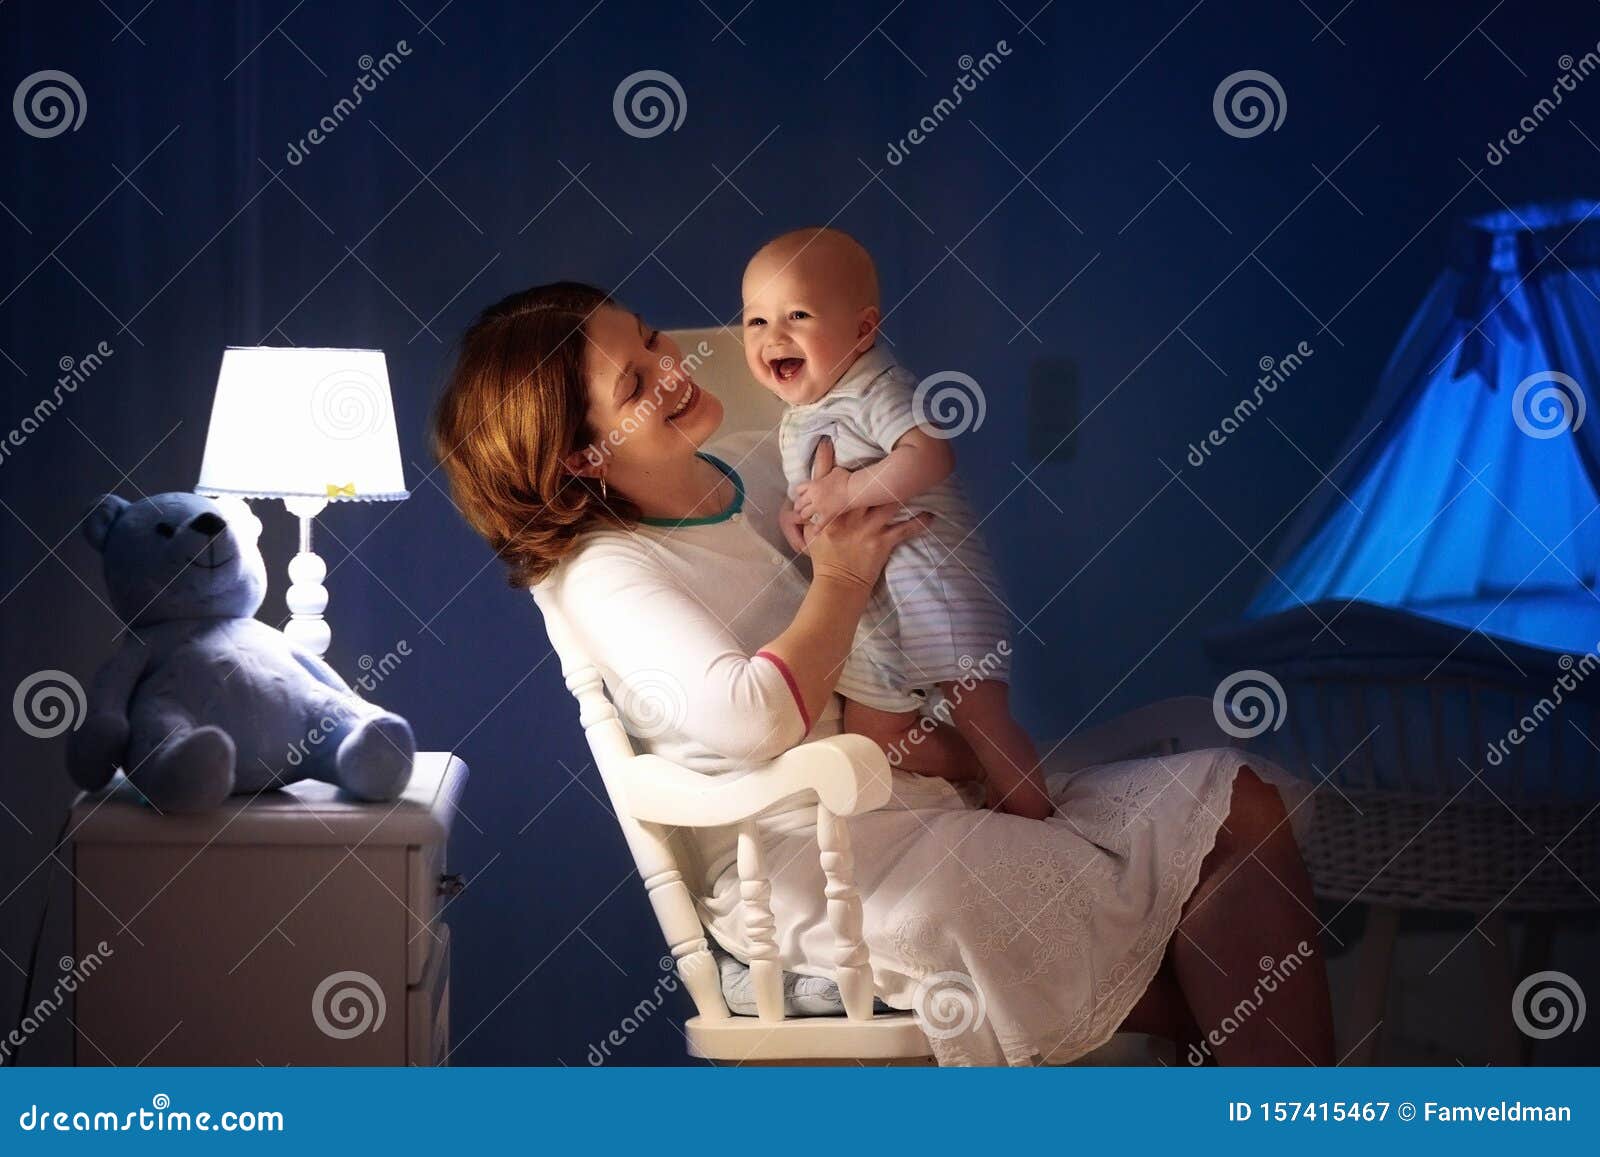 Mère Et Bébé Lisant Un Livre Dans La Chambre Sombre. Maman Et Enfant Lisent  Des Livres